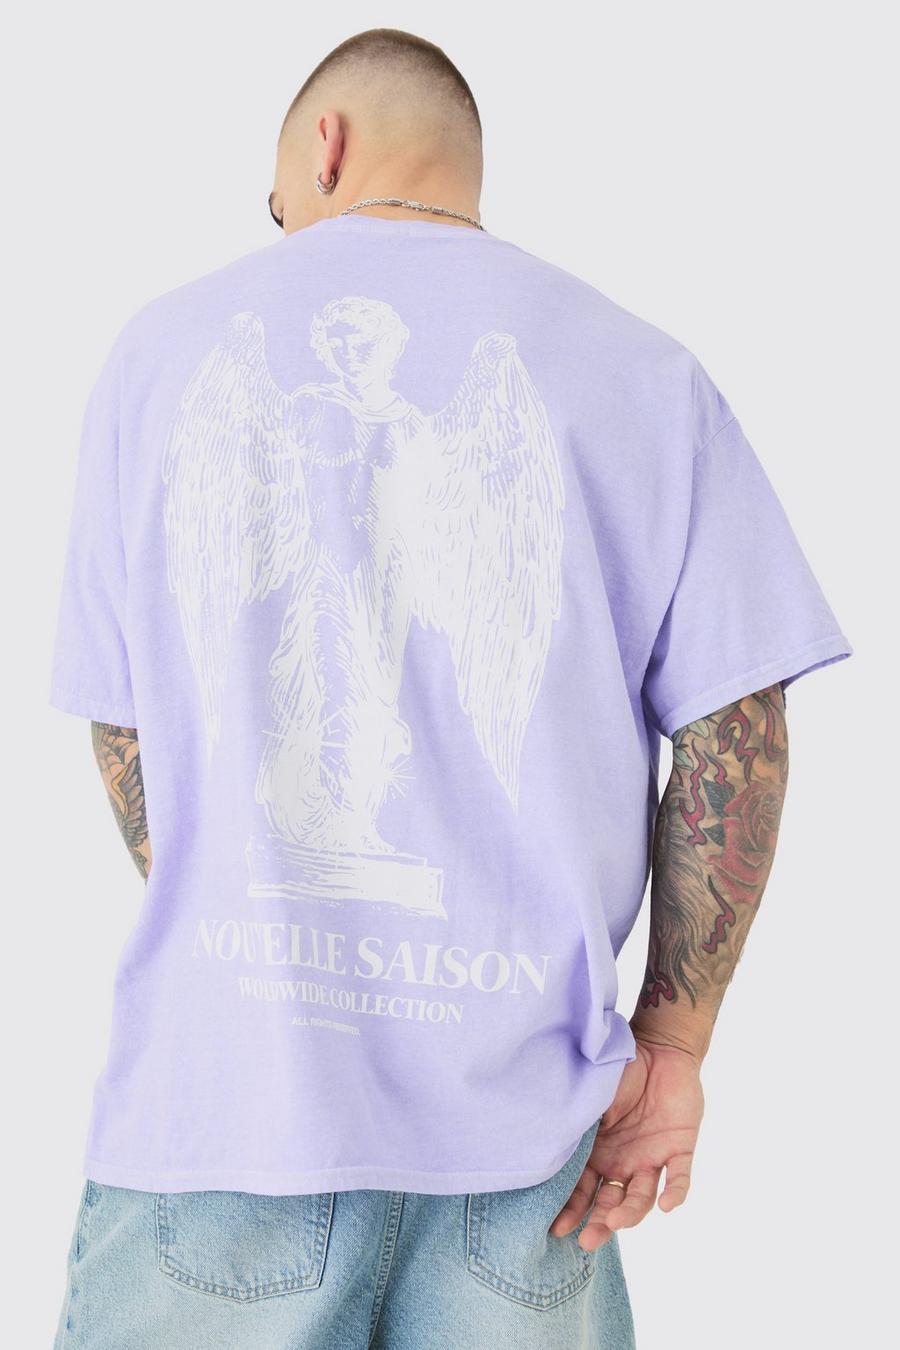 T-shirt oversize délavé à slogan Renaissance, Lilac